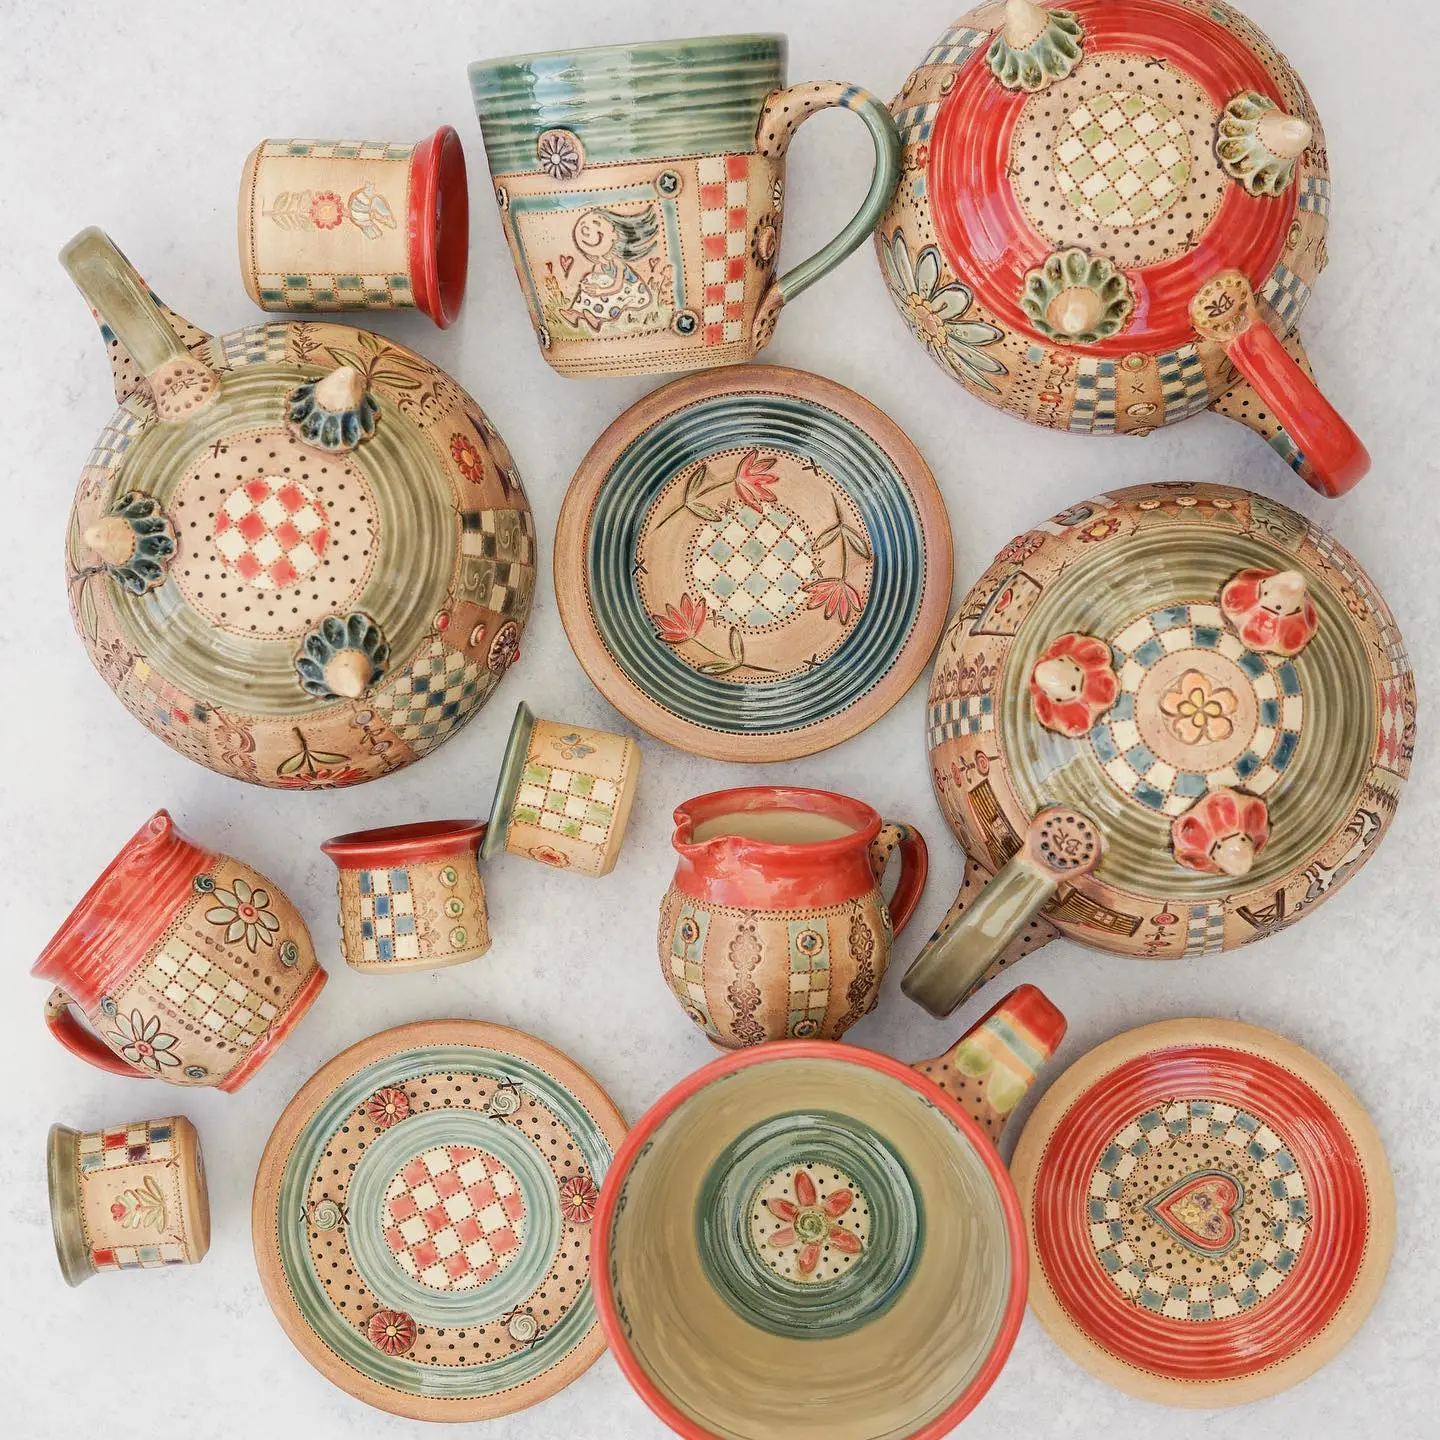 Brigitte Richard's ceramic